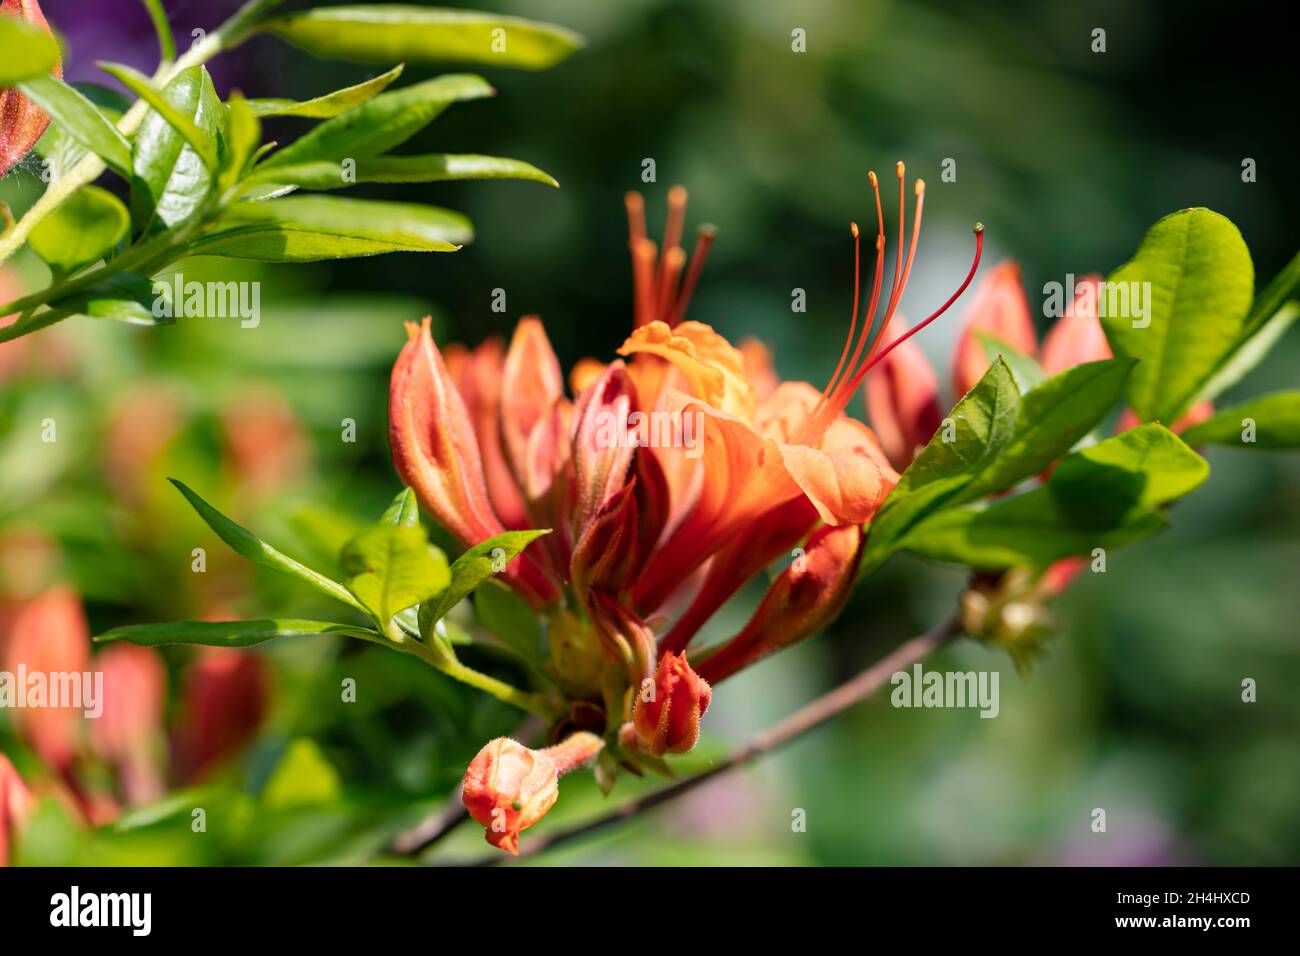 Nahaufnahme der orange roten Blüten der Azalee 'Goldflamme' in einem Garten in NRW, Deutschland. Botanischer Name: Rhododendron luteum Goldflamme Stock Photo